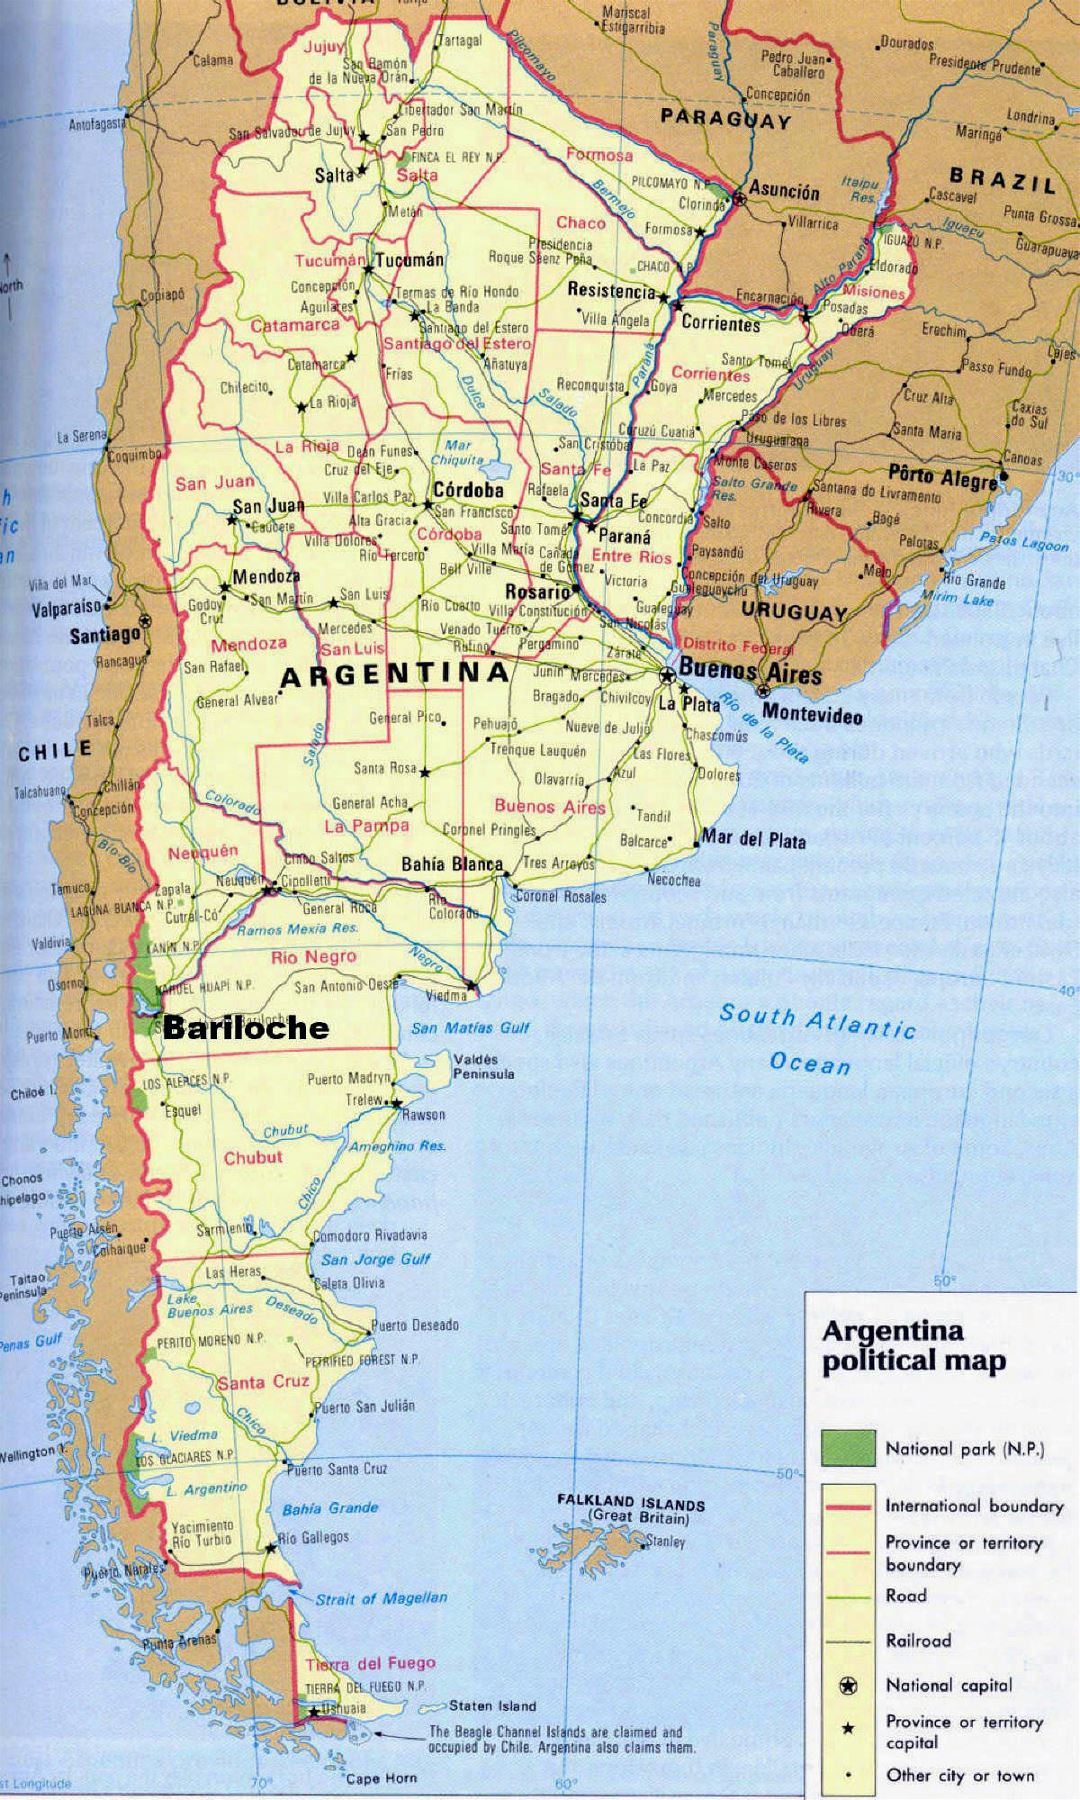 Детальная политическая карта Аргентины с национальными парками